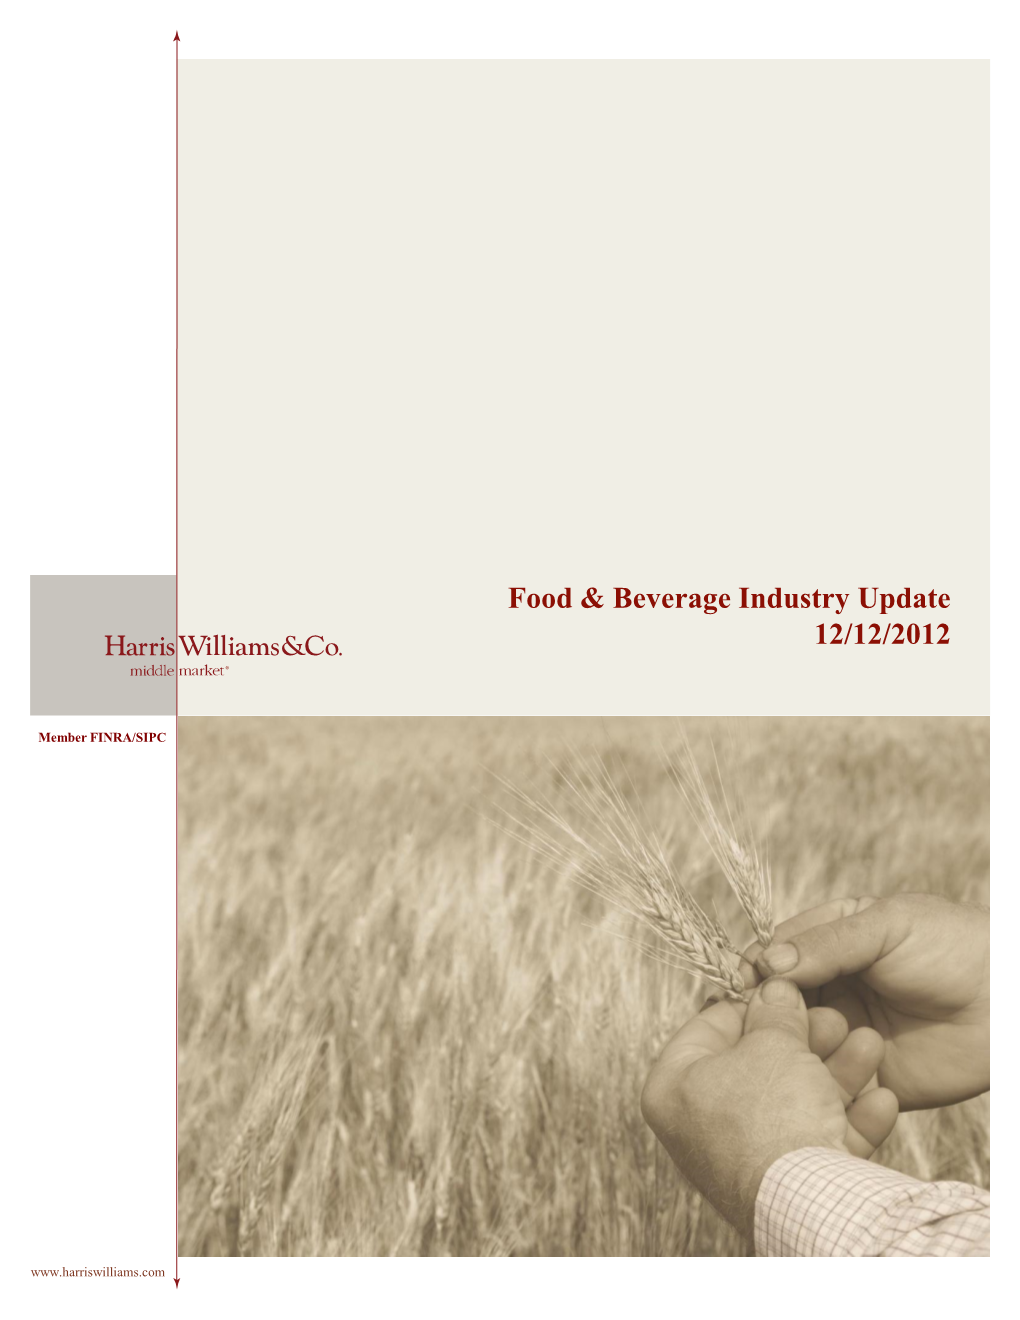 Food & Beverage Industry Update 12/12/2012